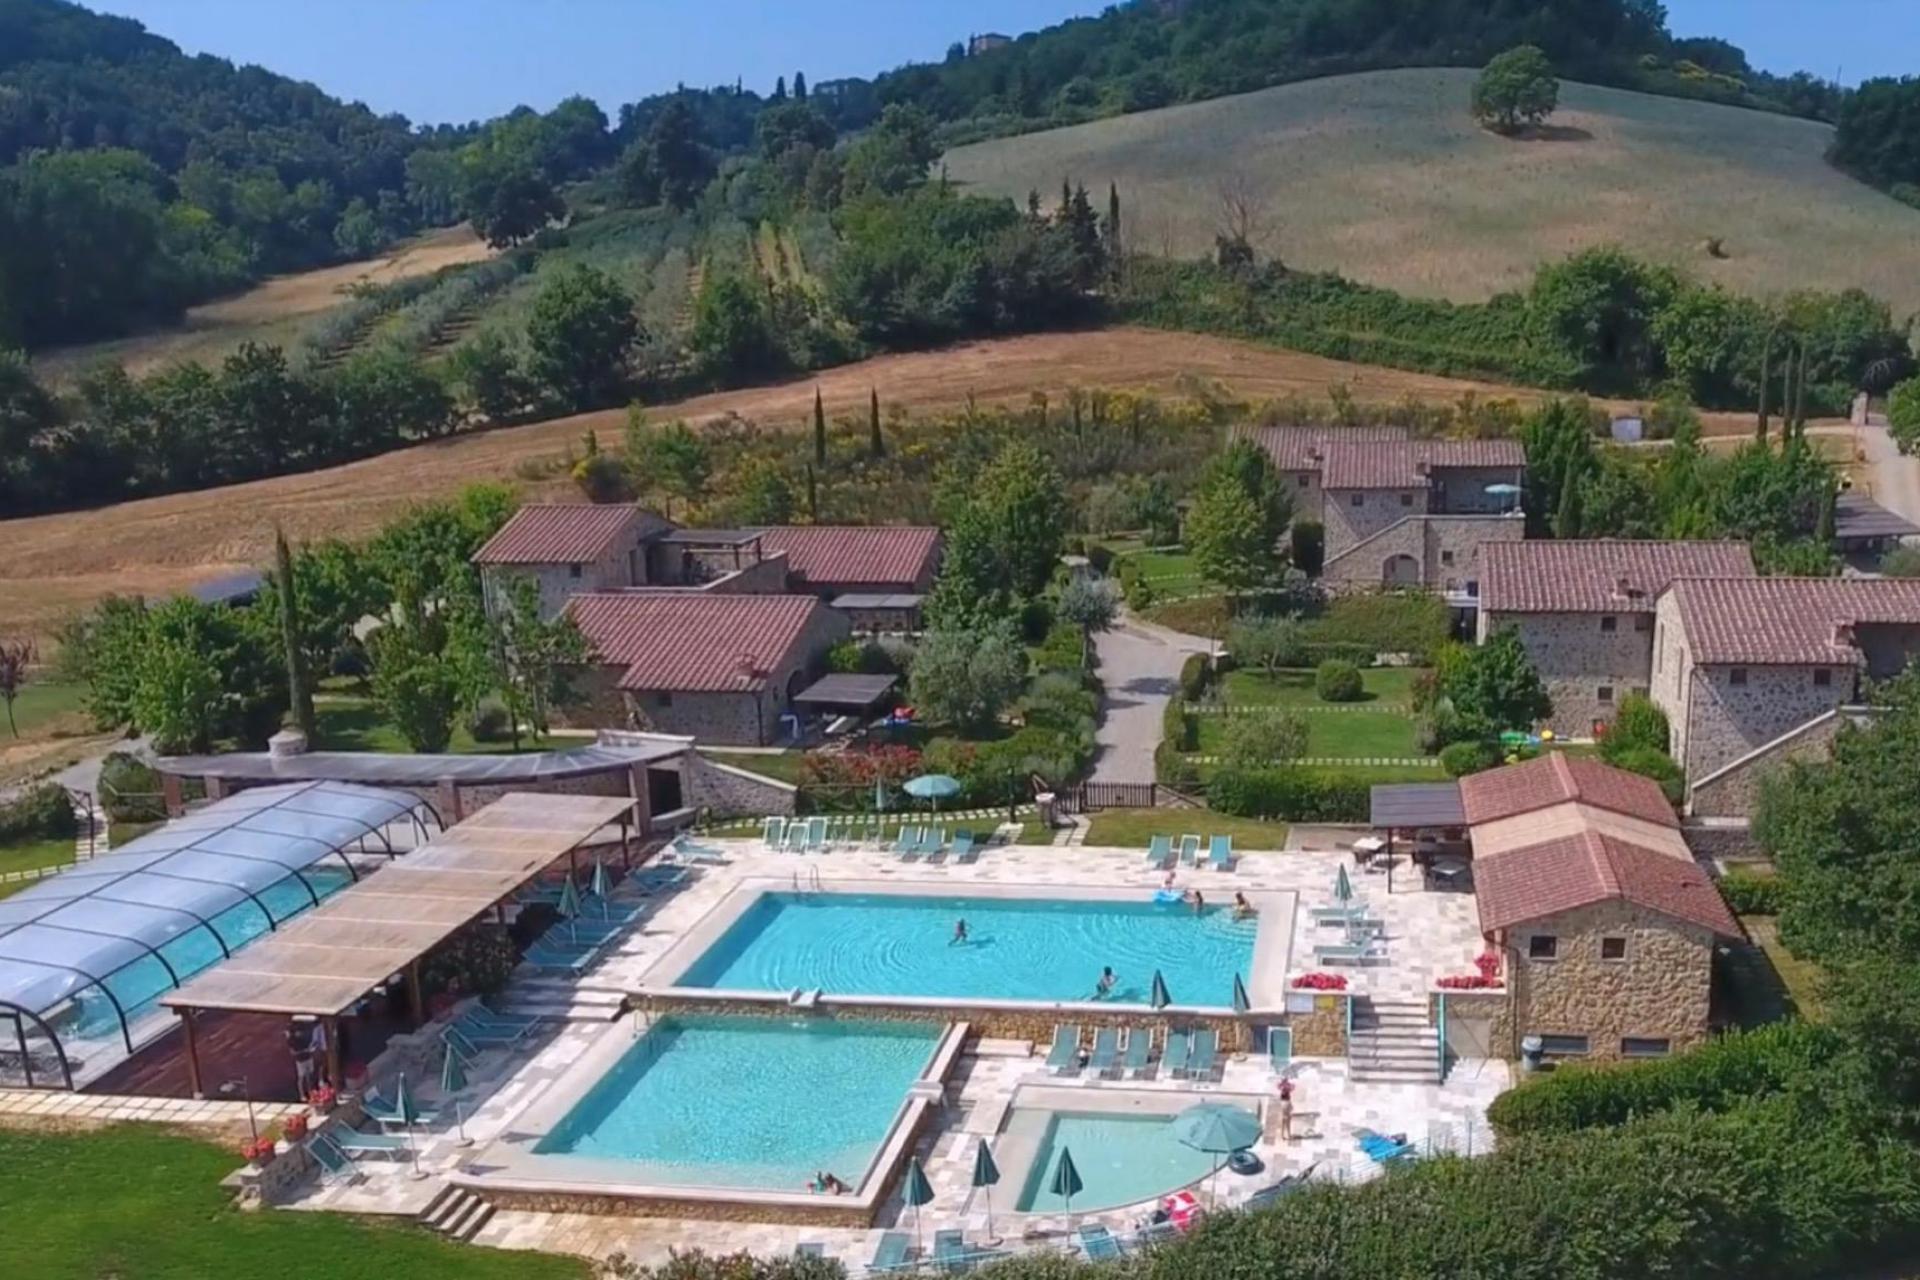 Kindvriendelijk resort in Toscane met geweldig zwembad